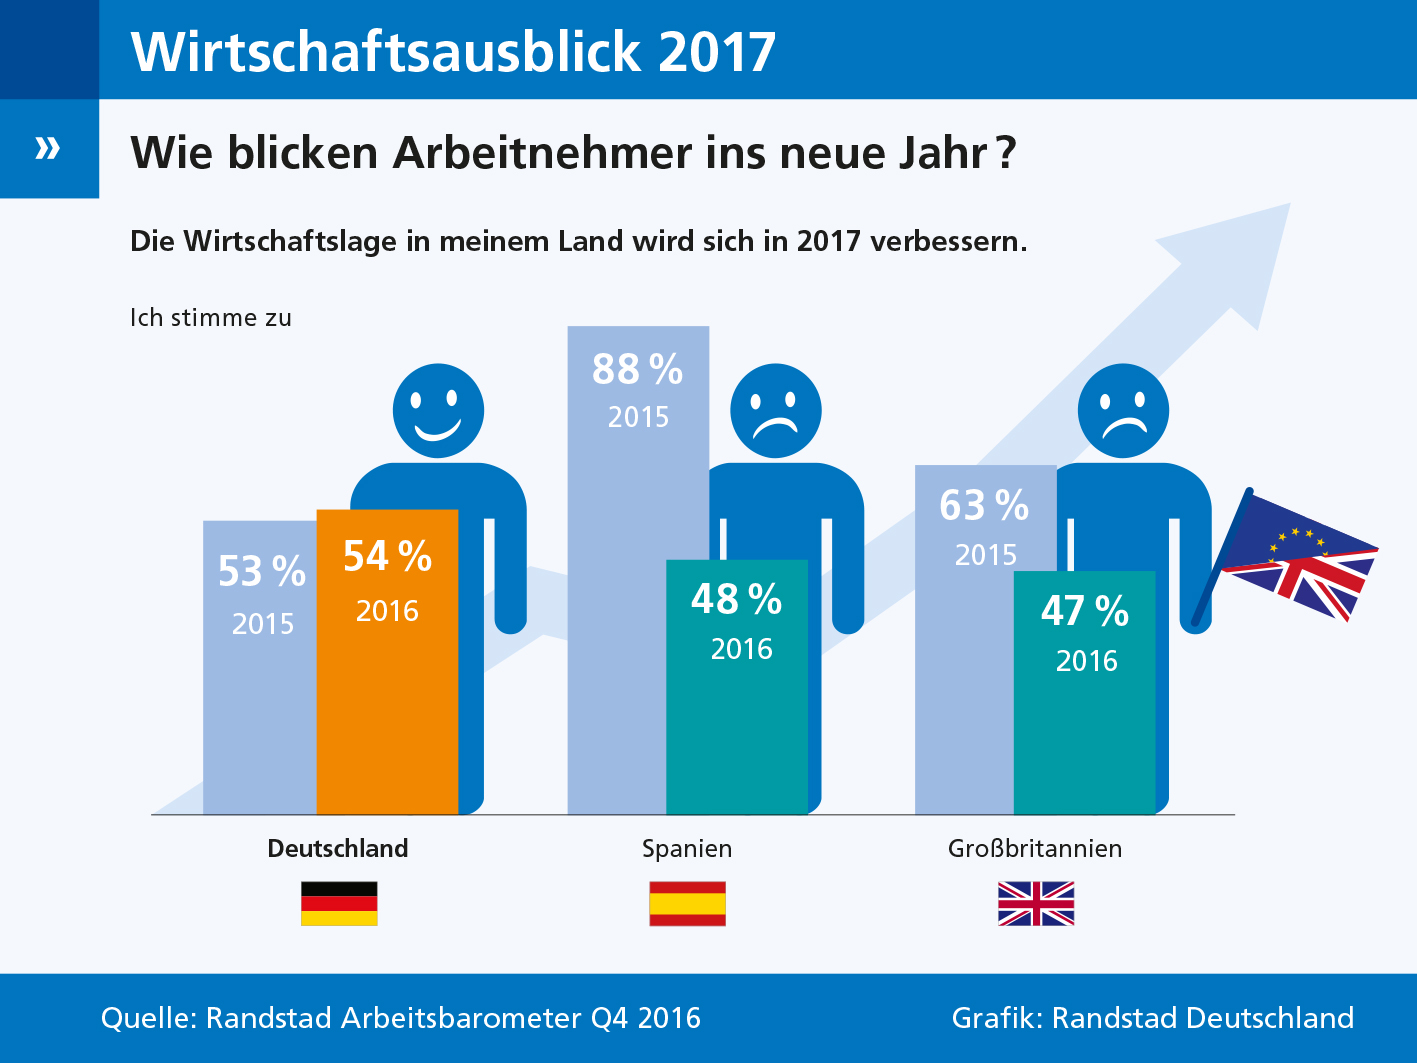 Die Arbeitnehmer in Deutschland blicken zuversichtlich ins neue Jahr. 54 Prozent der Befragten rechnen damit, dass sich die Wirtschaftssituation auch im nächsten Jahr verbessern wird, so das Ergebnis des aktuellen Randstad Arbeitsbarometers. Doch nicht überall in Europa sind die Arbeitnehmer so optimistisch. In Spanien und Großbritannien hat sich Ernüchterung breit gemacht. 